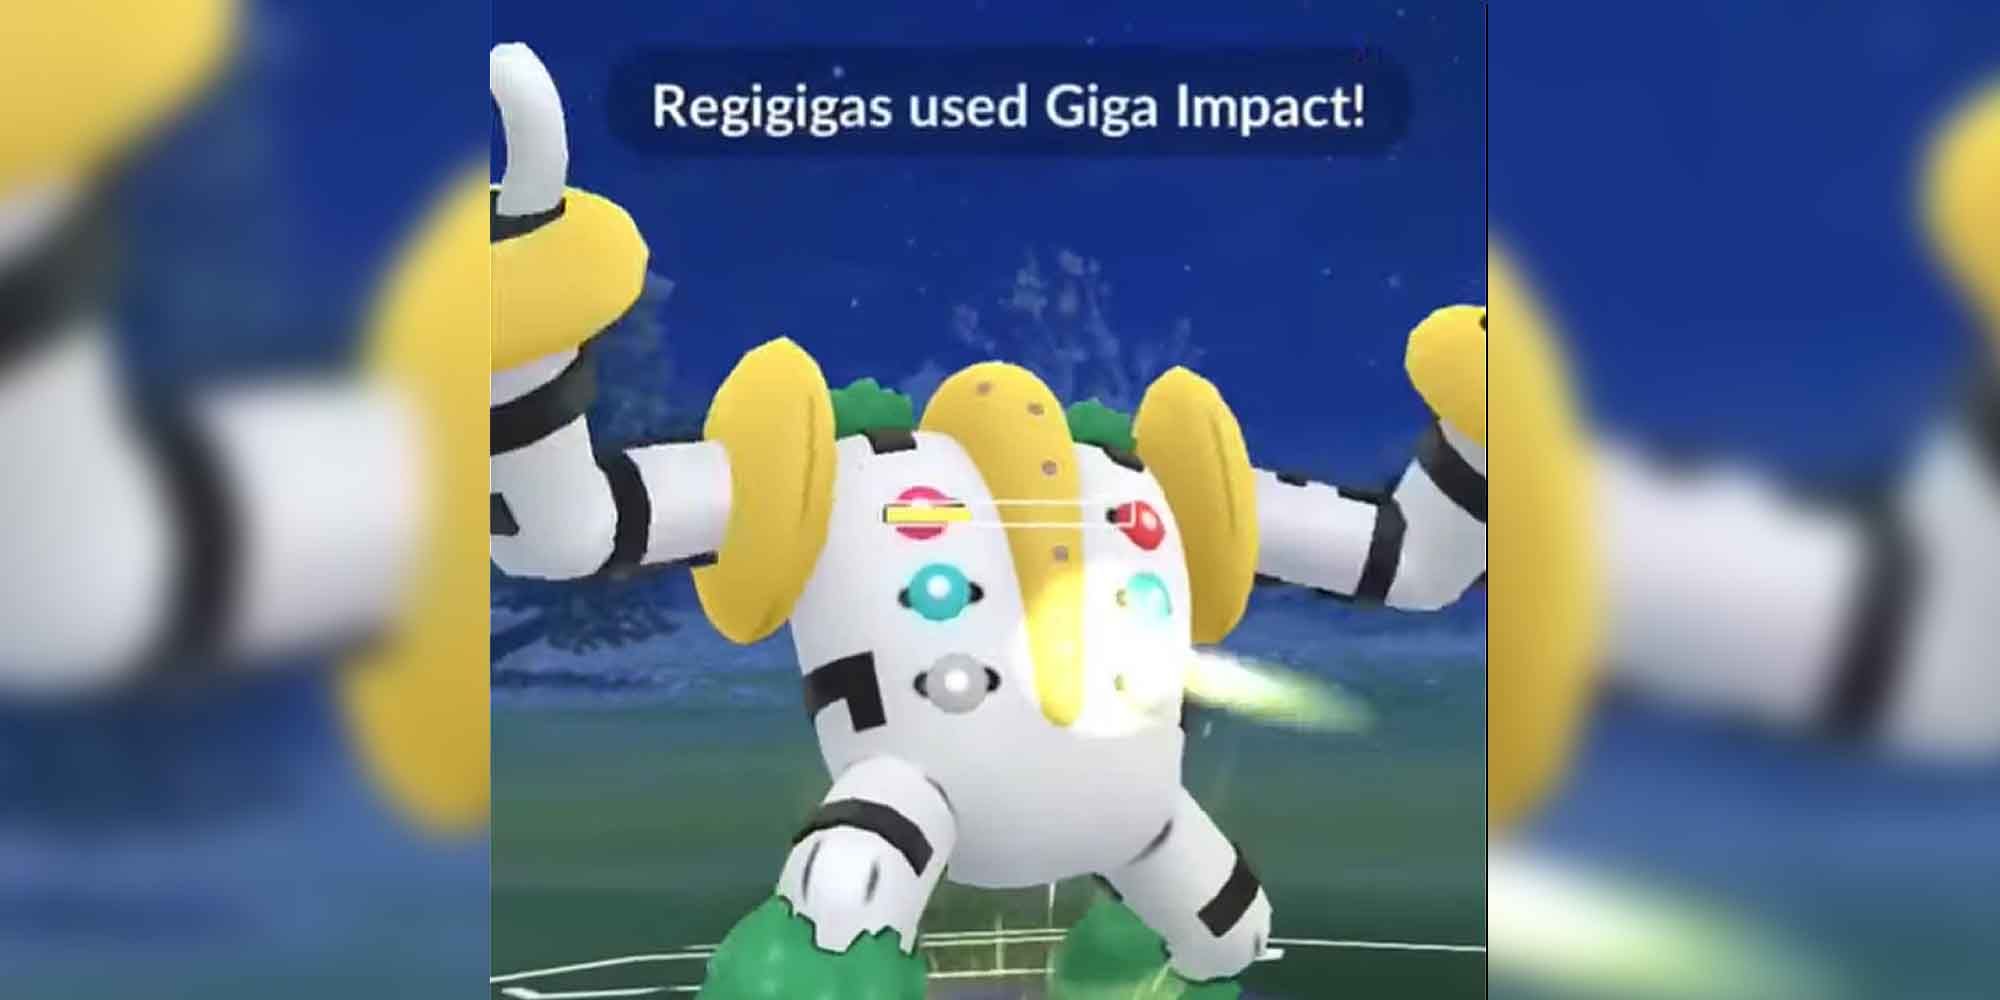 Regigigas using Giga Impact in Pokemon GO